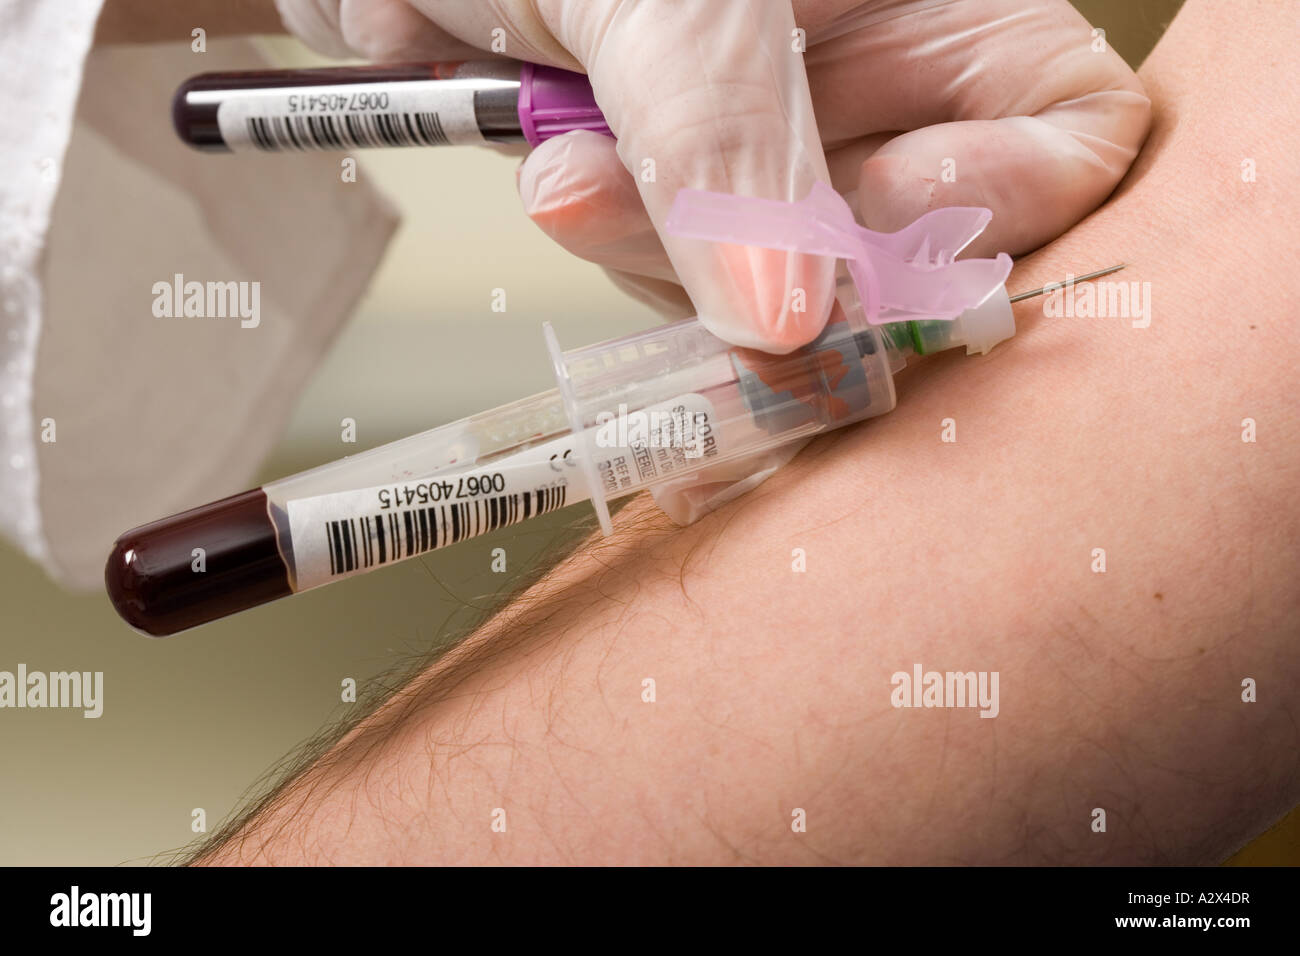 Krankenschwester zieht Blut von Patienten Arm während ein Bluttest durchgeführt. Stockfoto